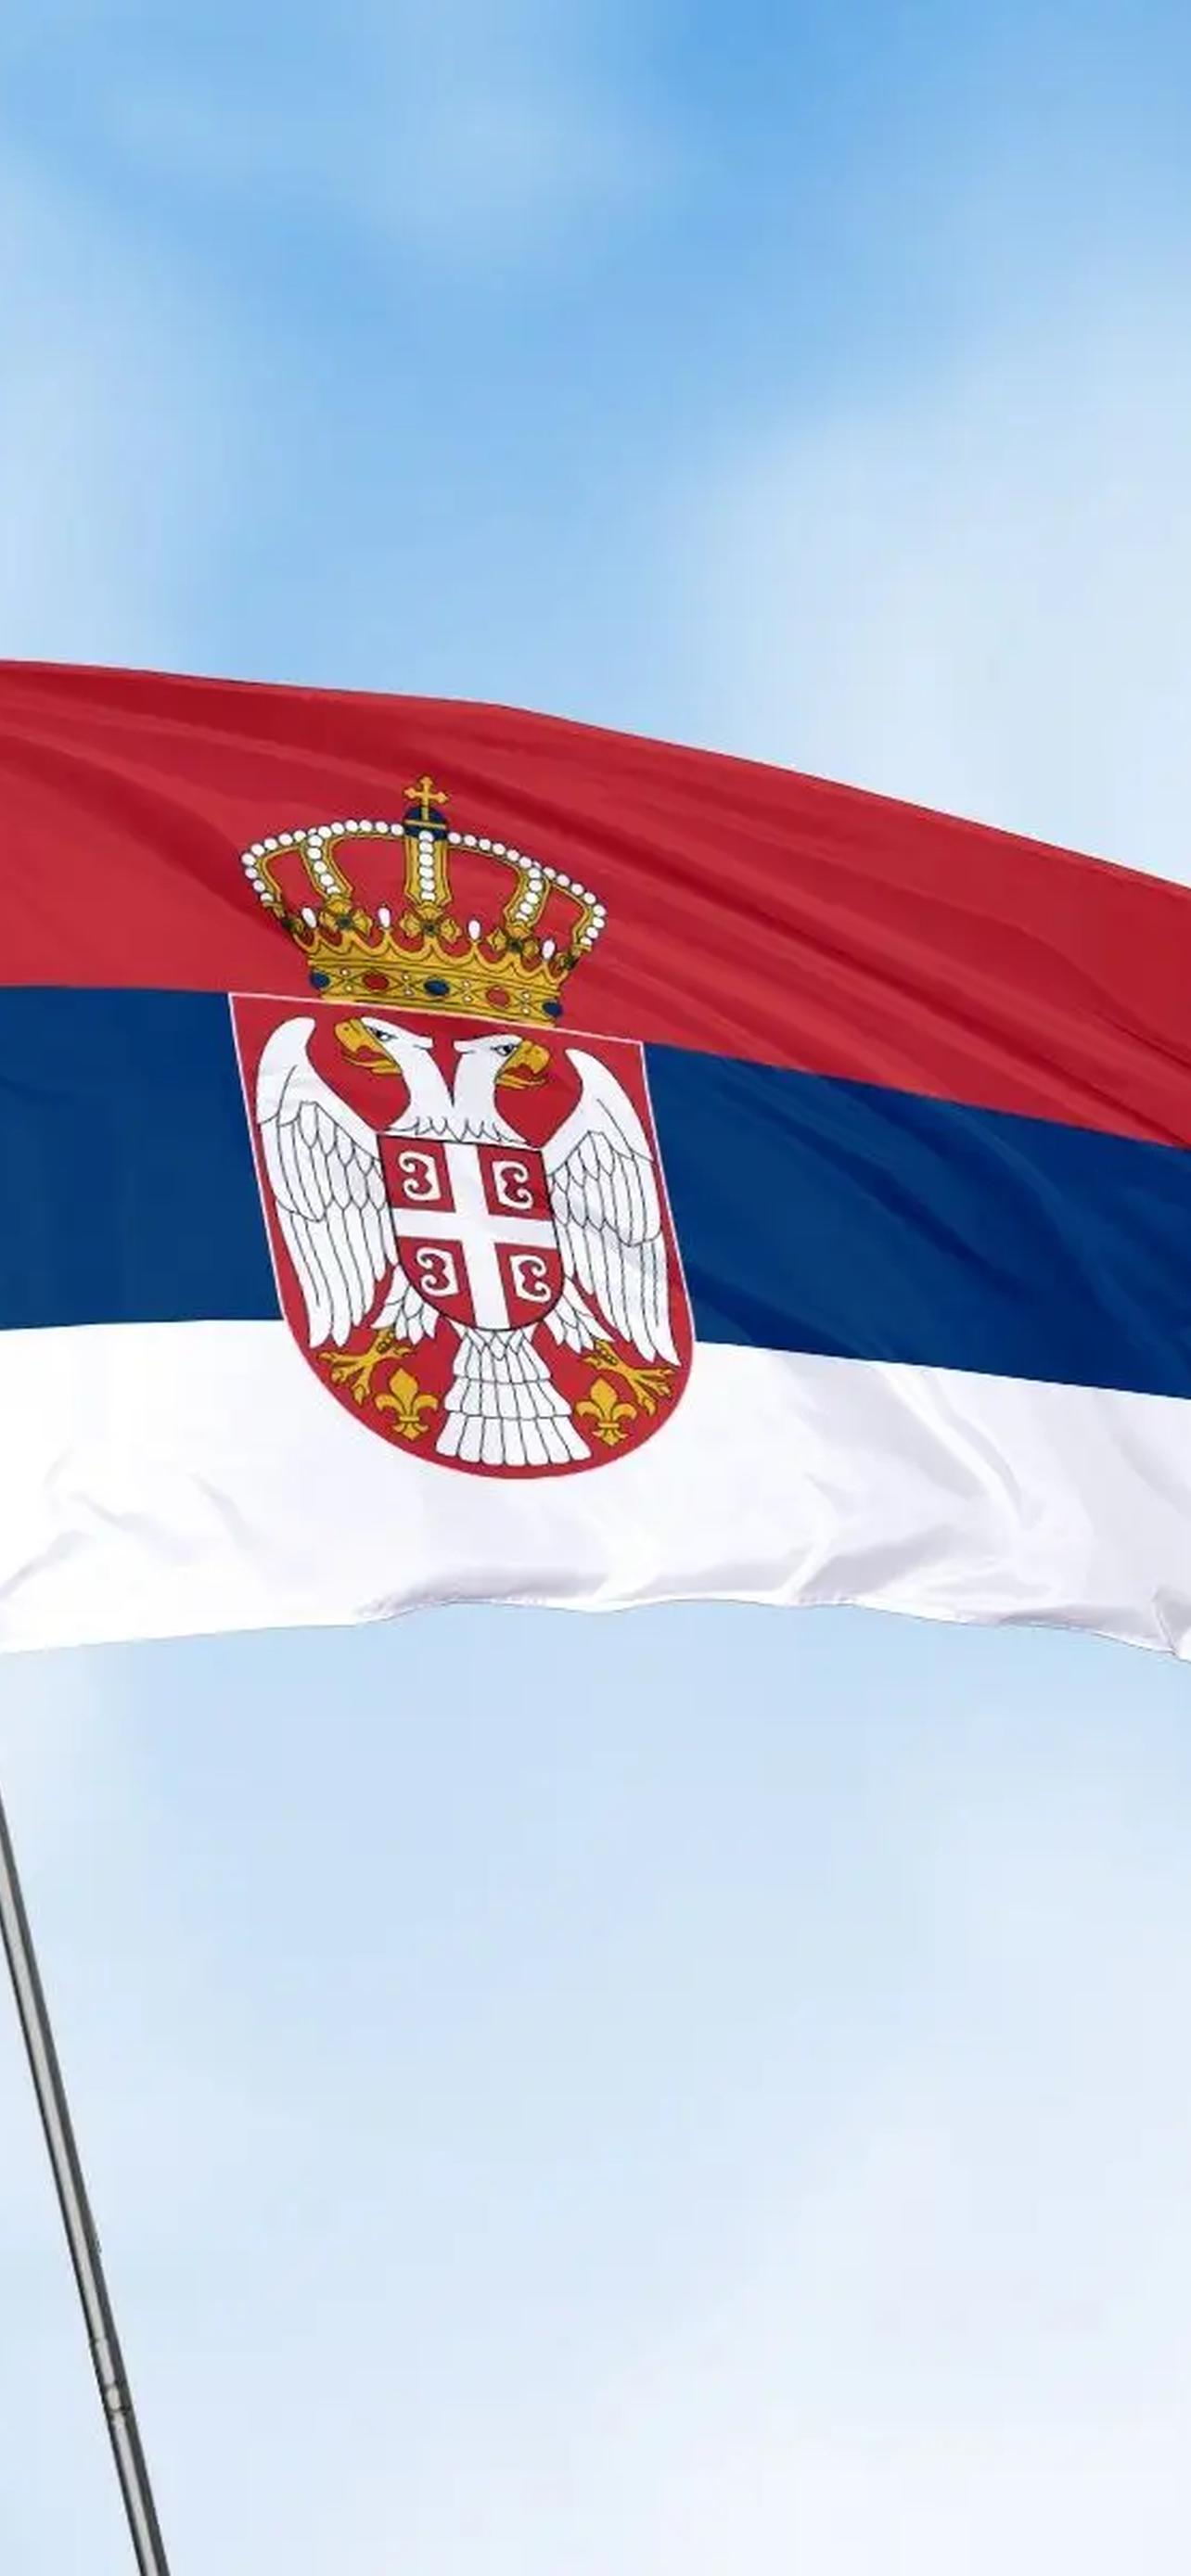 Республика сербская флаг. Флаг Сербии Чехии. Флаг Сербии и Греции. Флаг сербской Македонии. Грузинский флаг.